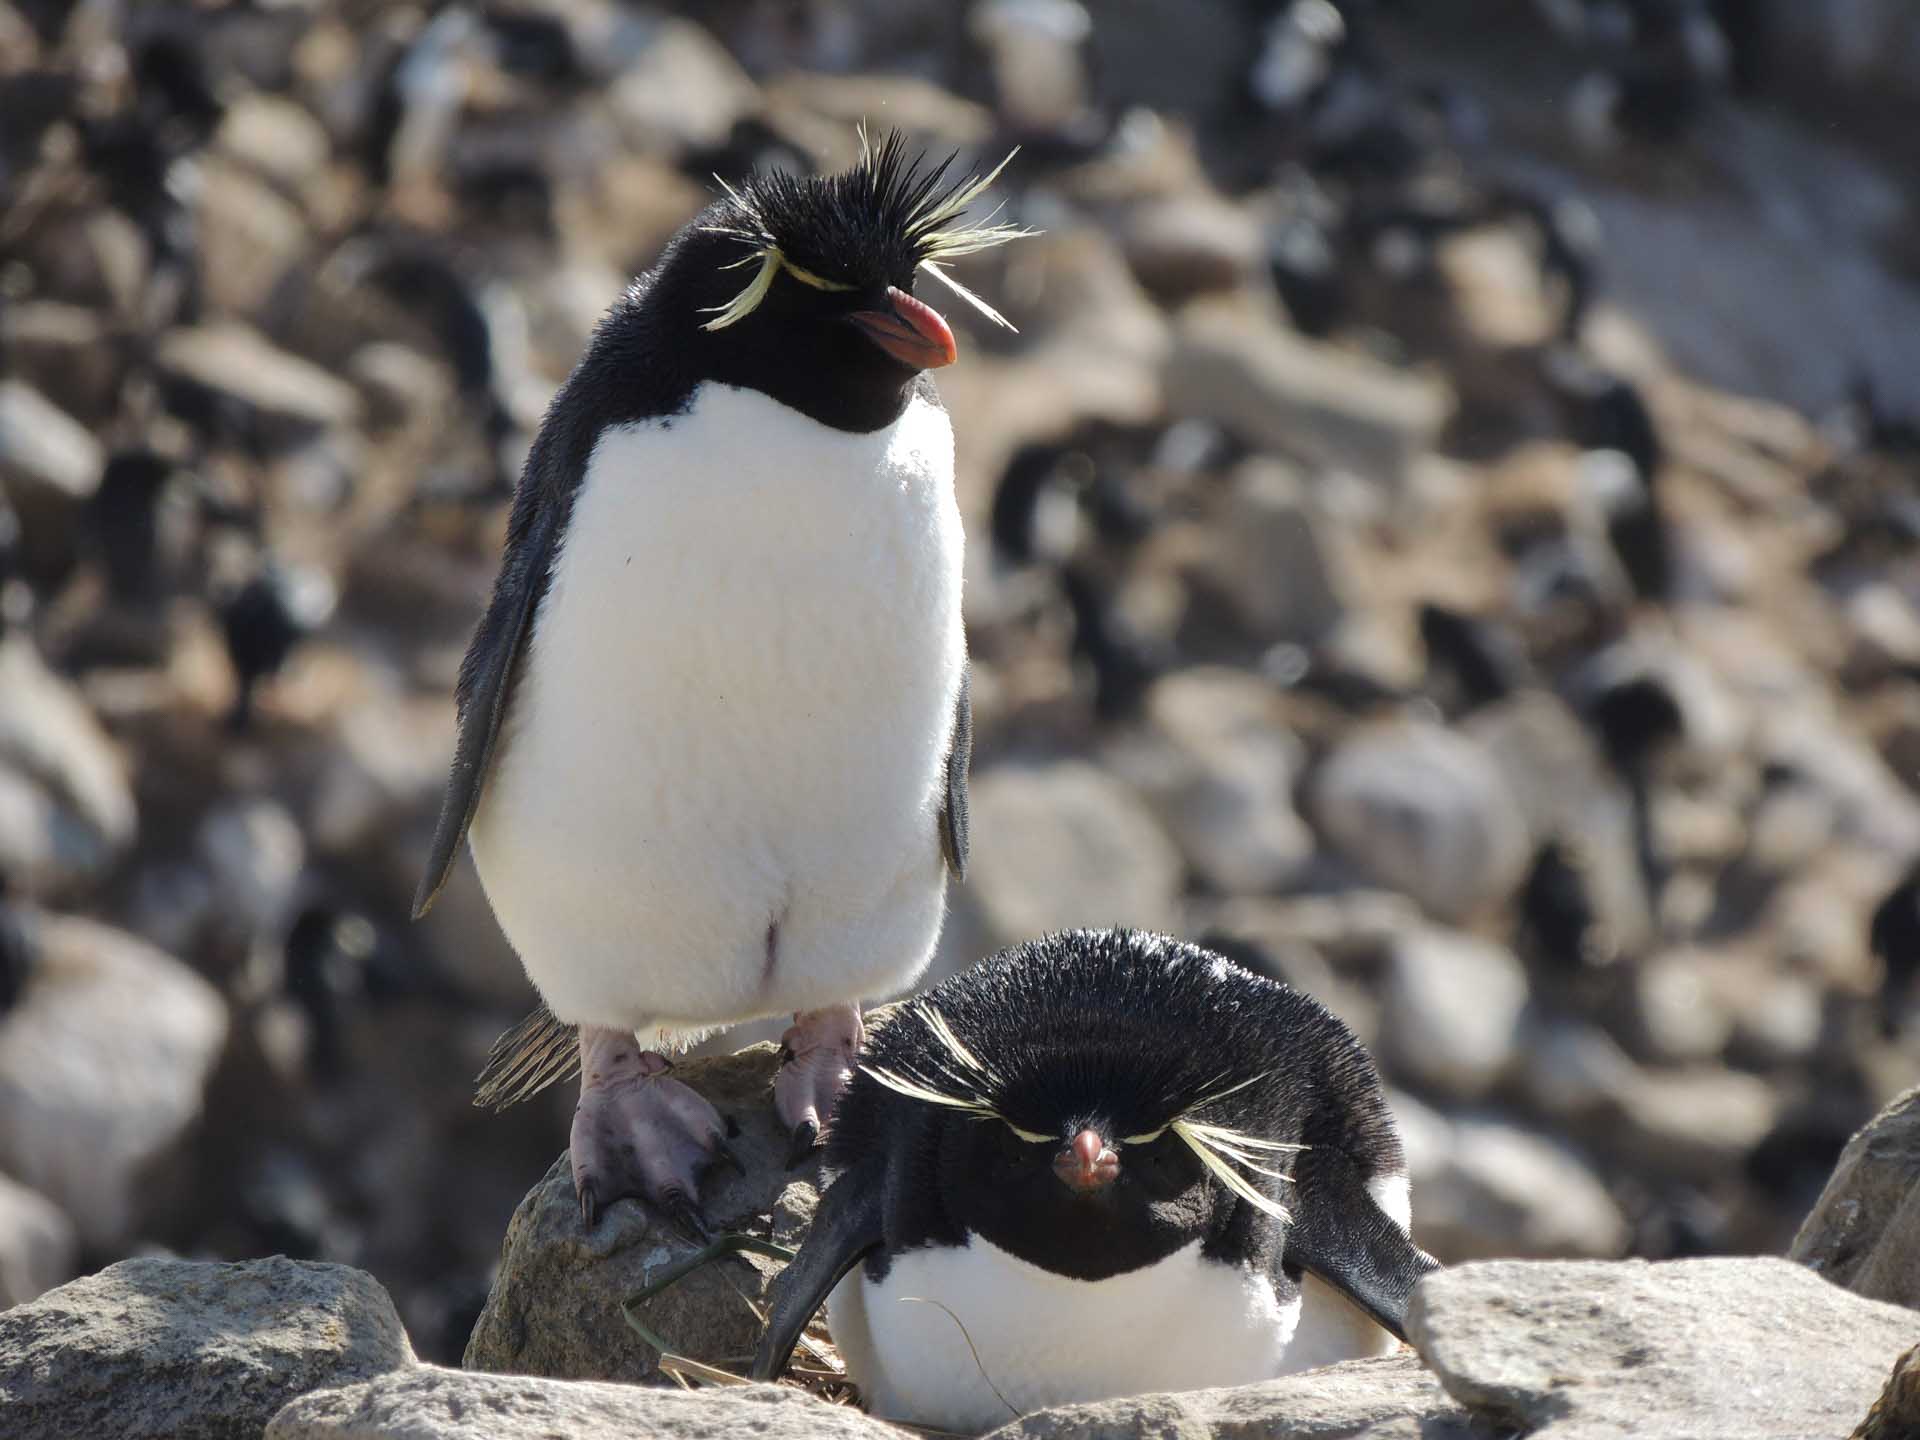 Local penguin wildlife